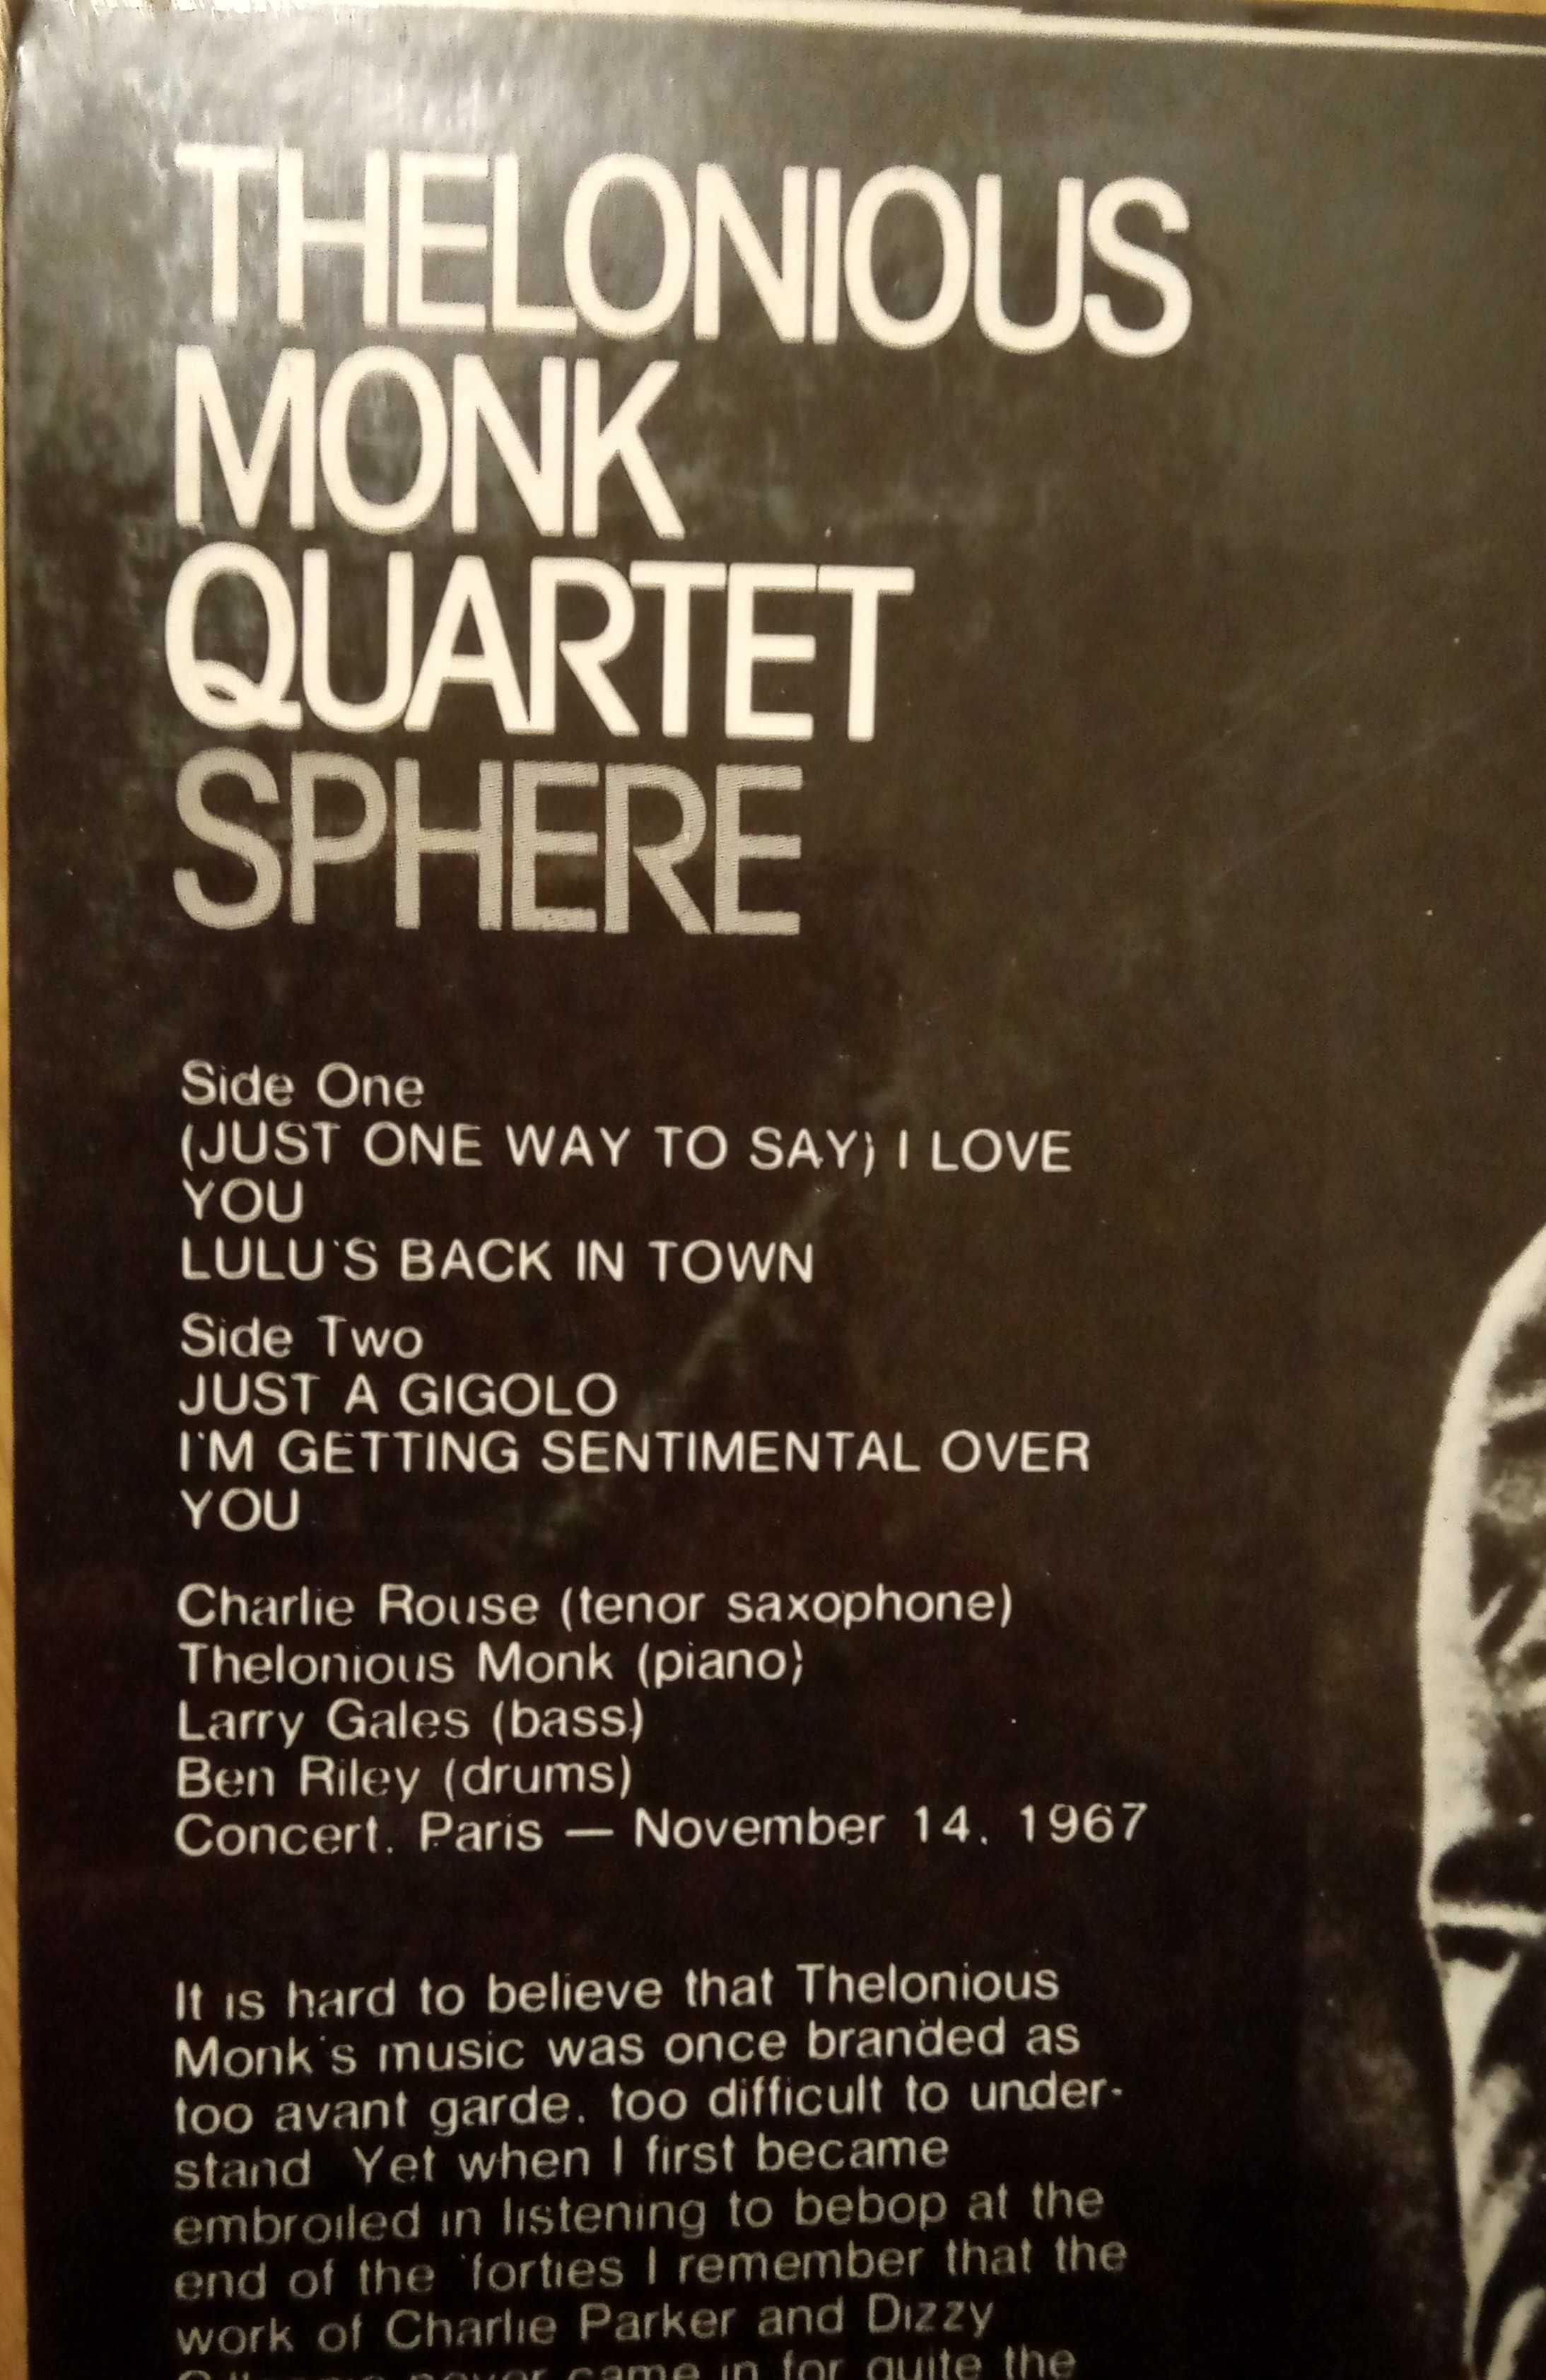 Thelonious Monk Quartet, Sphere, LP